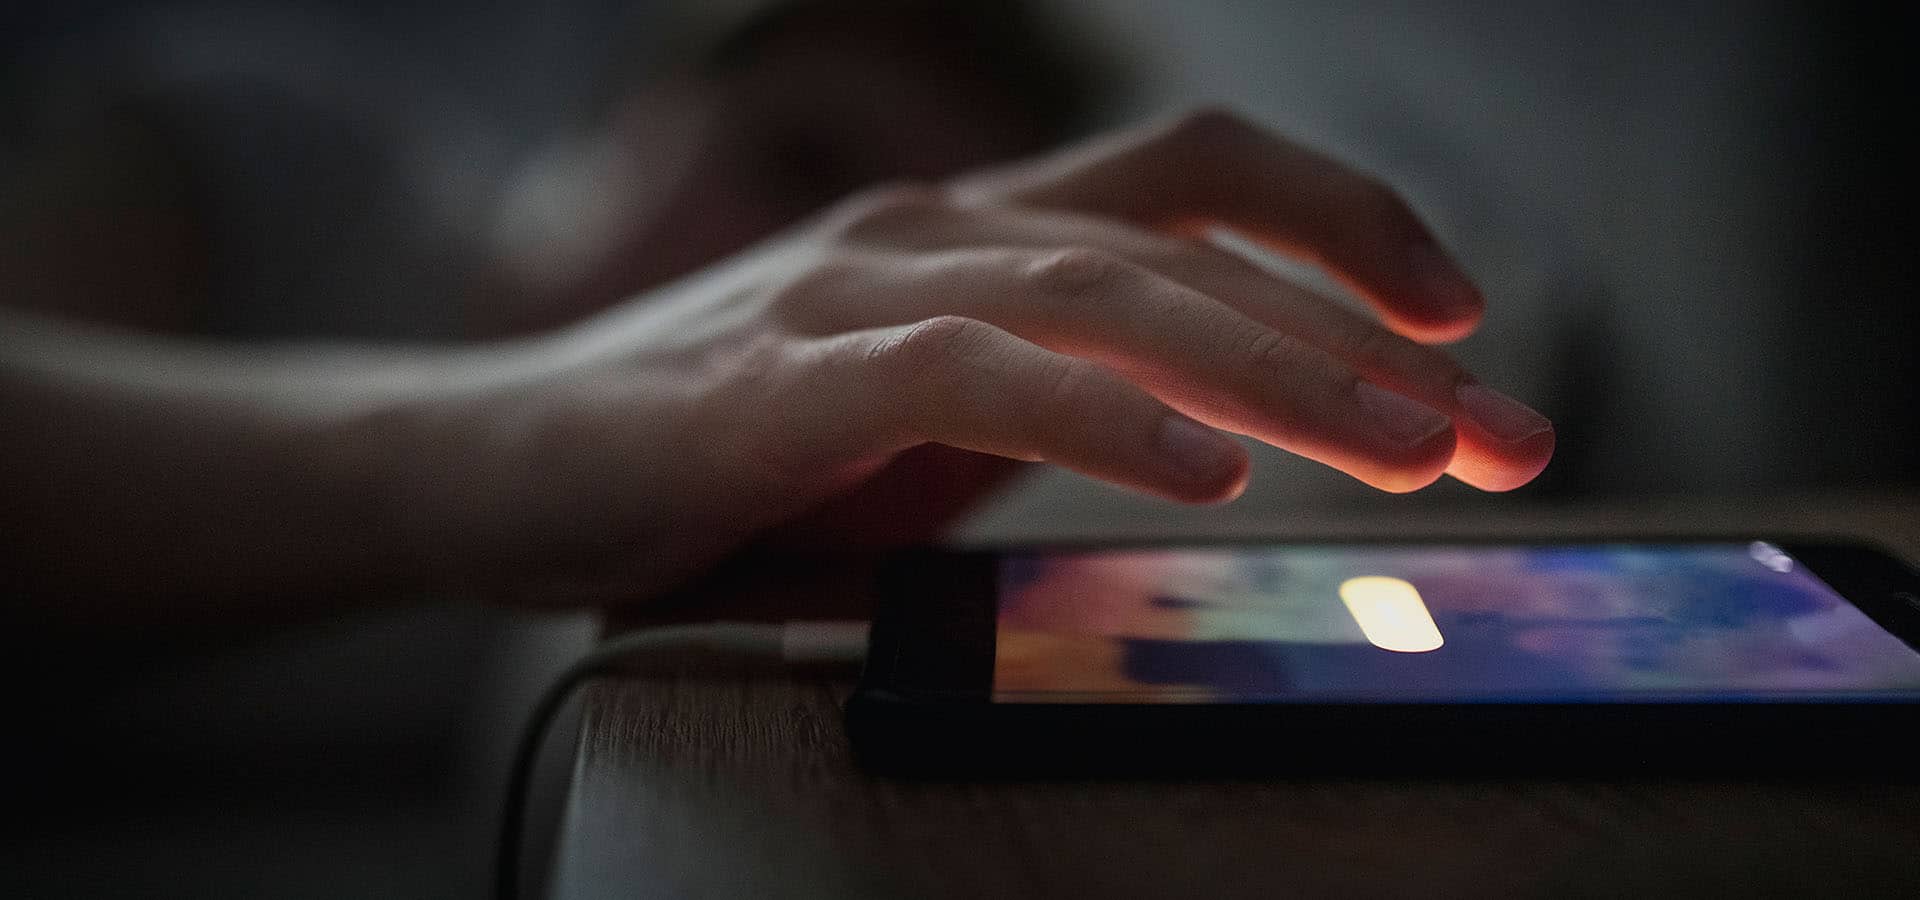 Wecker App auf Smartphone nachts neben Bett